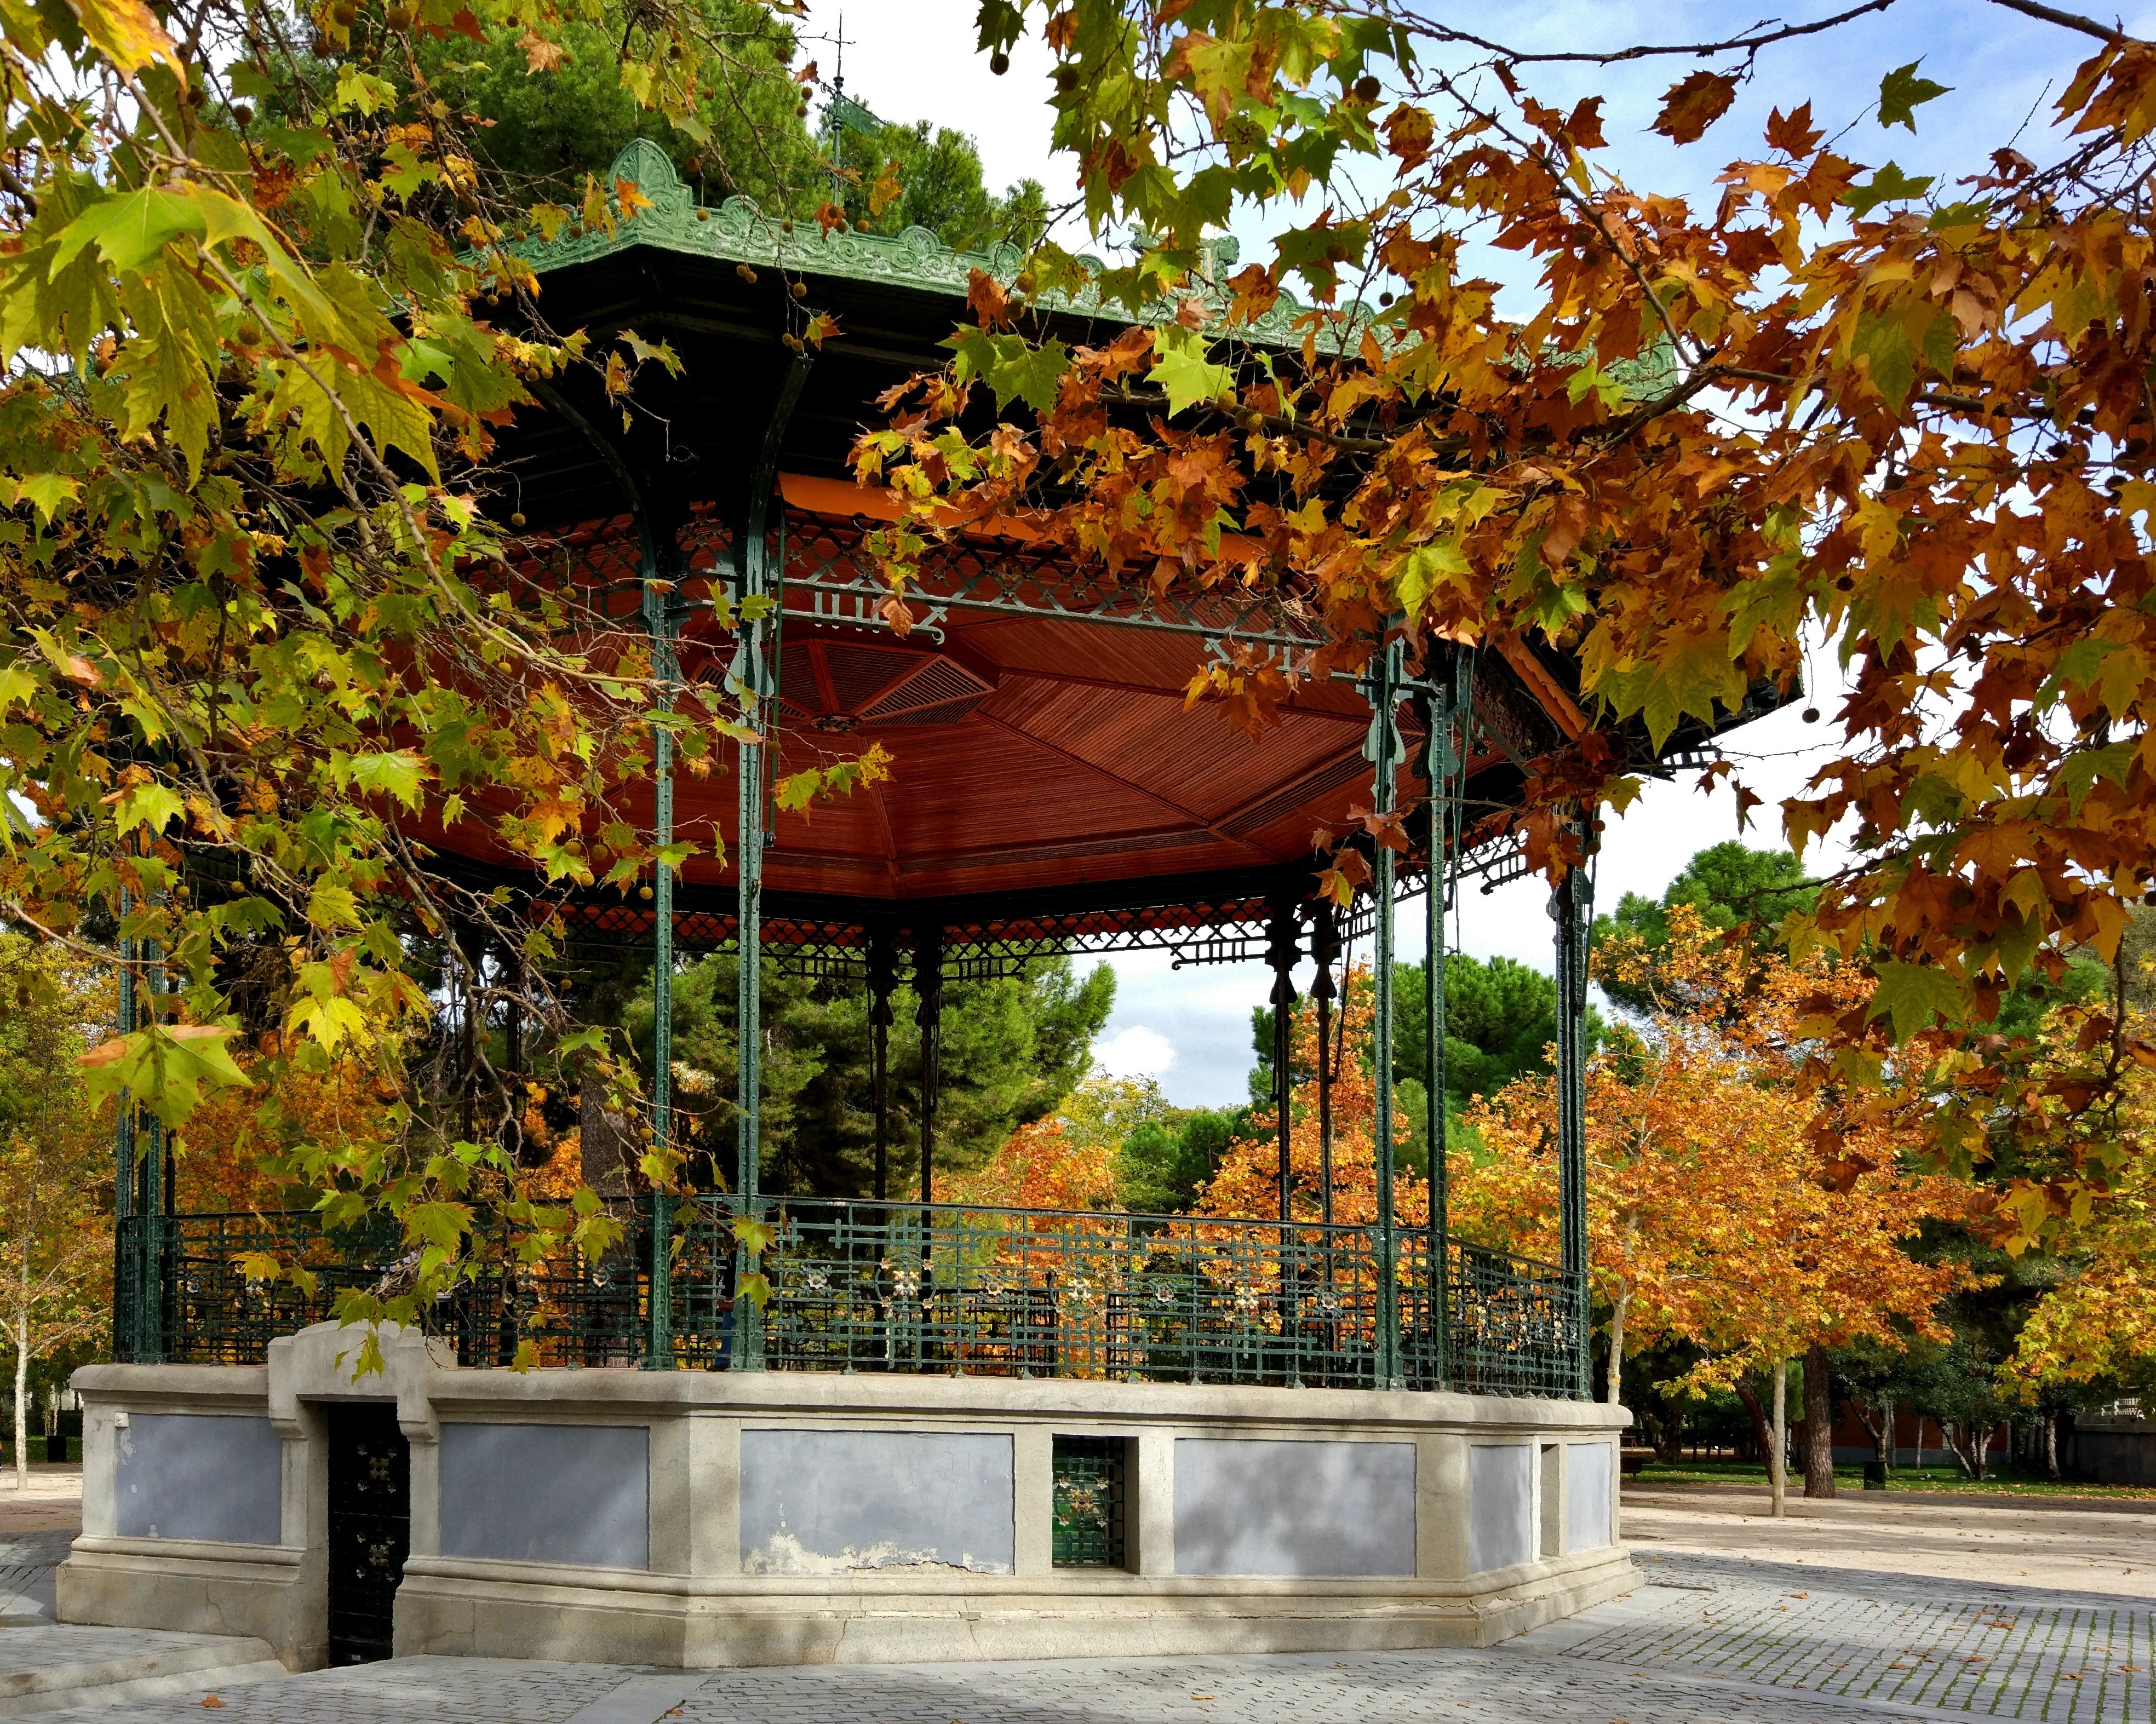 Autumn, music kiosk in Madrid's Retiro Park